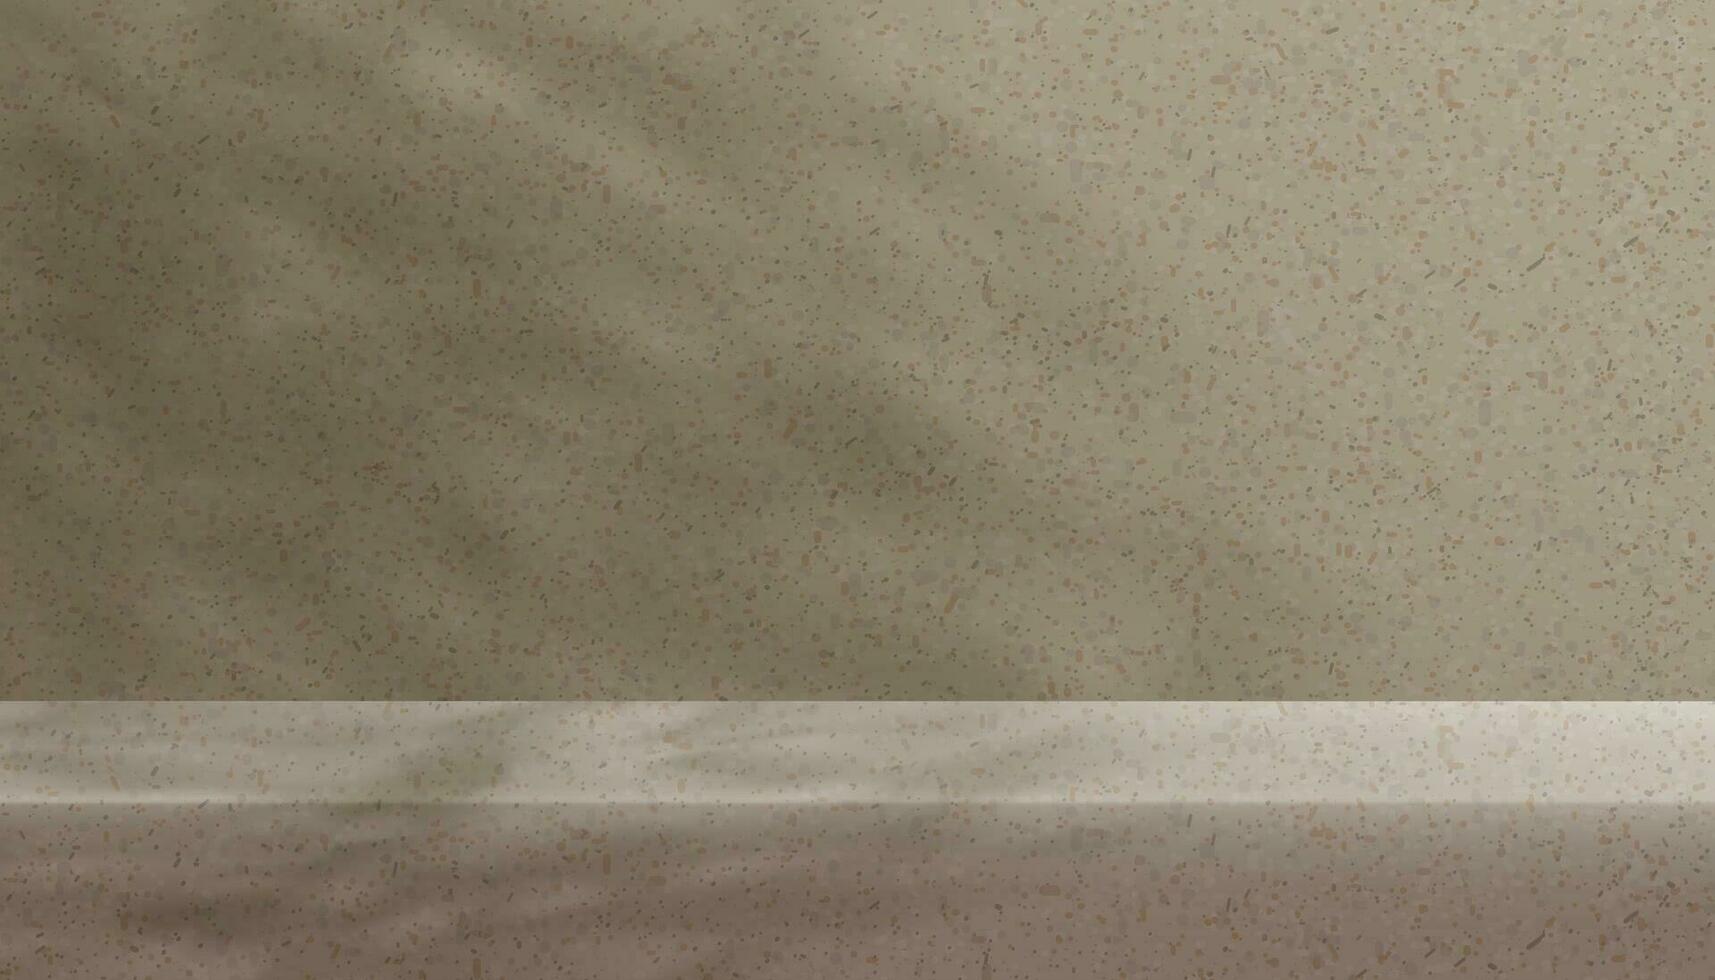 Studio Hintergrund Anzeige mit Schatten Blätter auf Terrazzo Marmor Mauer Zimmer, leer Galerie mit Sonnenlicht auf Granit Etage, Konzept zum kosmetisch Produkt Präsentation, Verkauf, online Geschäft im Herbst Herbst Jahreszeit vektor